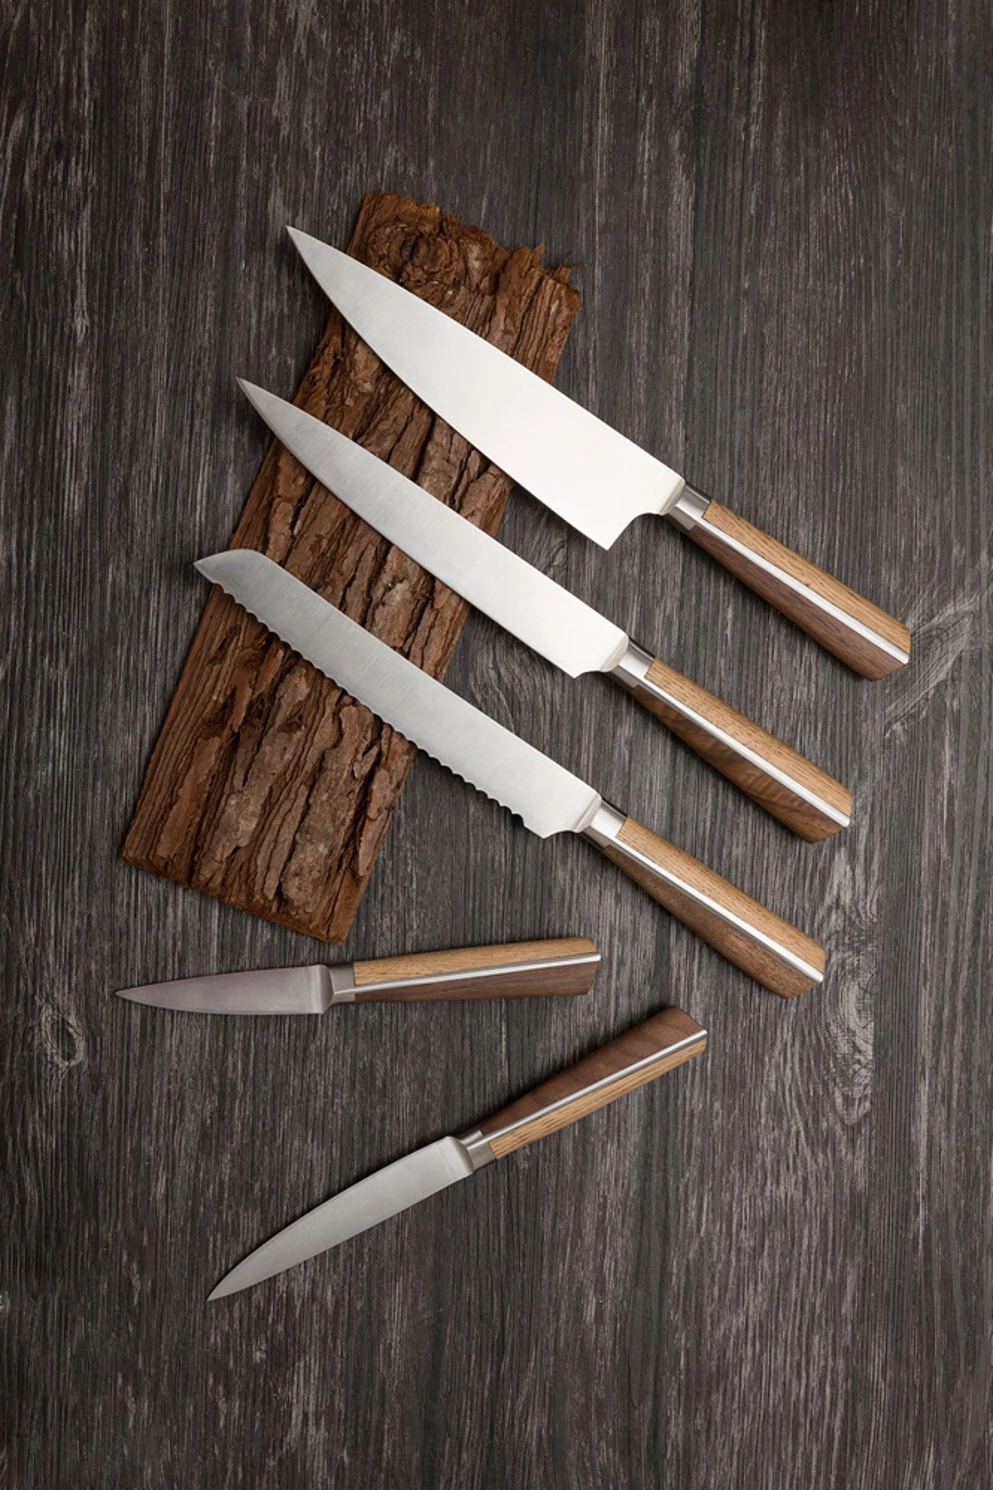 Deglon High-Woods kokkekniv med 20 cm